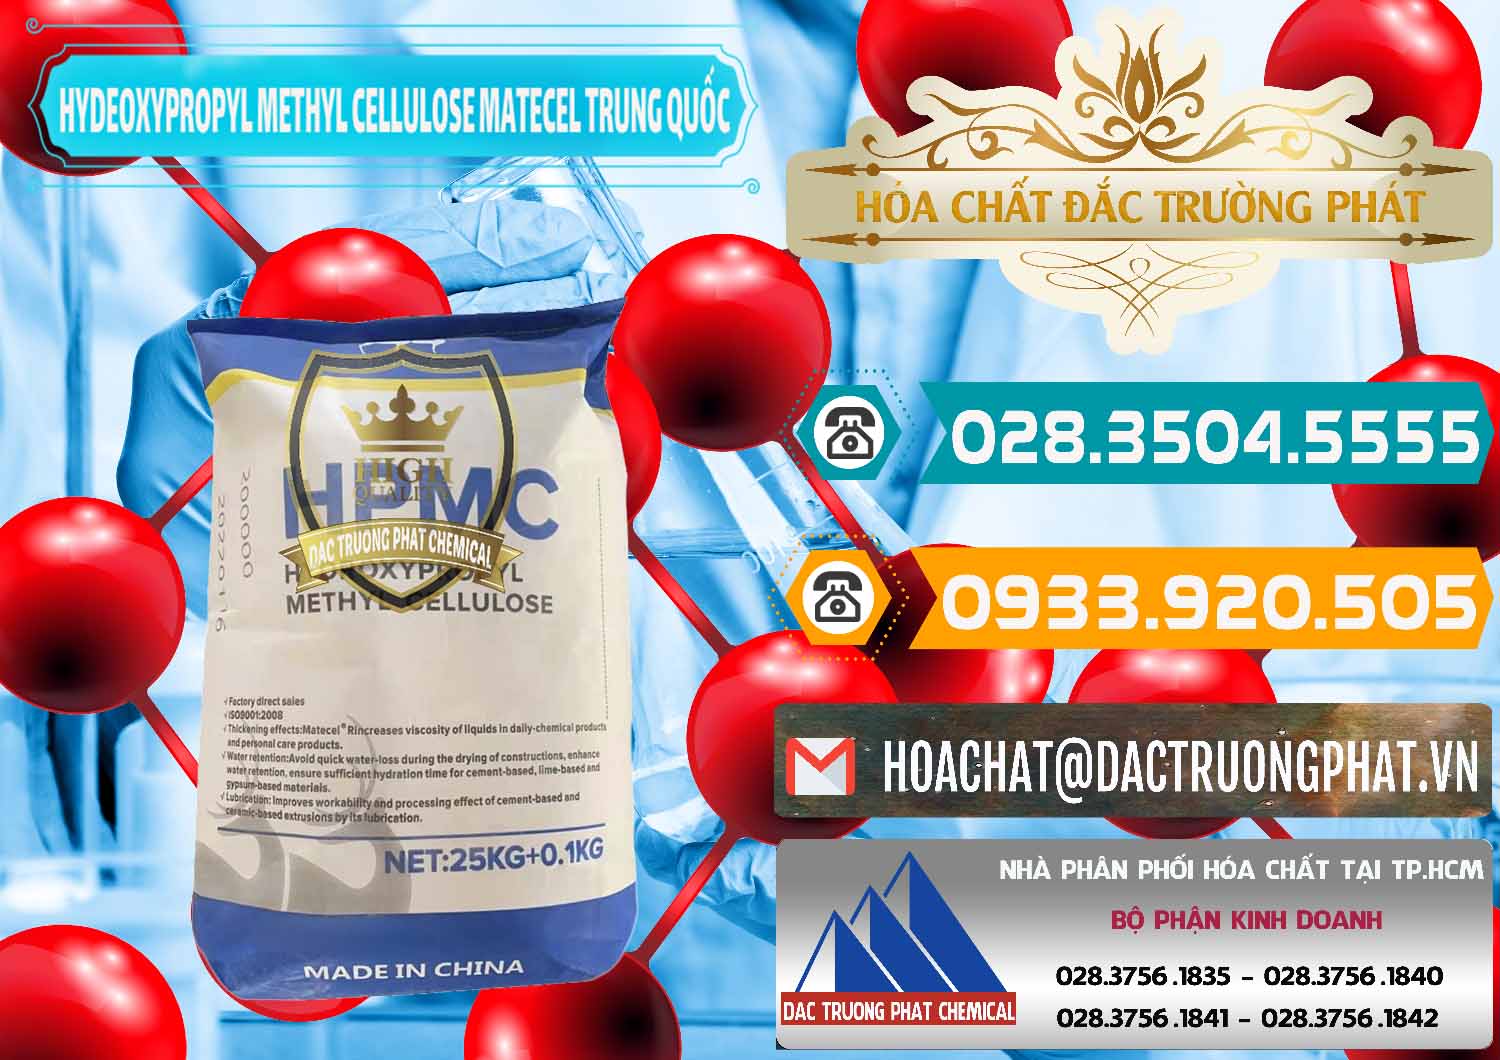 Đơn vị chuyên kinh doanh & bán Chất Tạo Đặc HPMC - Hydroxypropyl Methyl Cellulose Matecel Trung Quốc China - 0396 - Chuyên phân phối - cung ứng hóa chất tại TP.HCM - congtyhoachat.vn